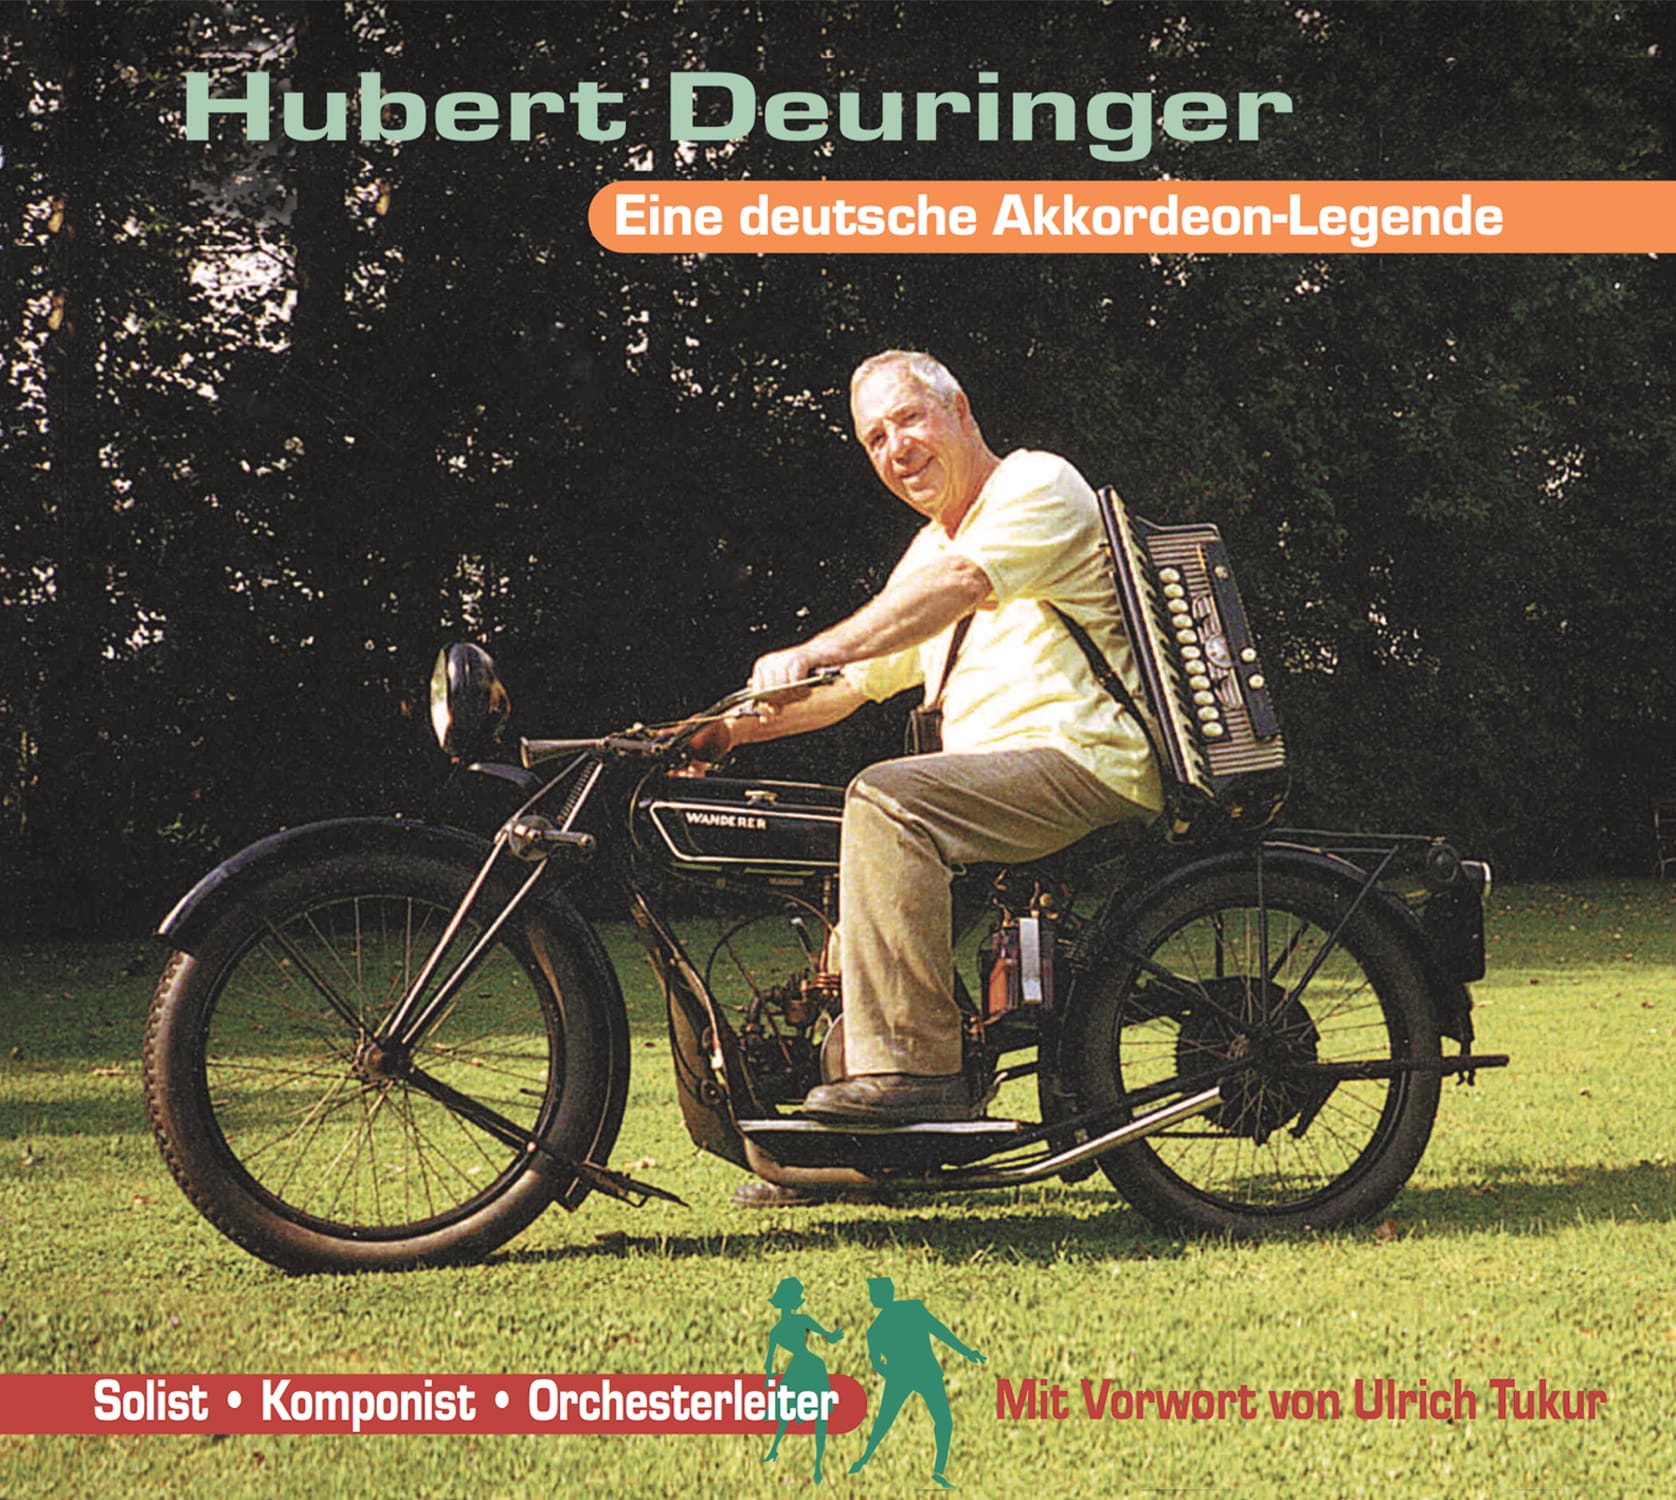 Hubert Deuringer Die Hubert Deuringer Story